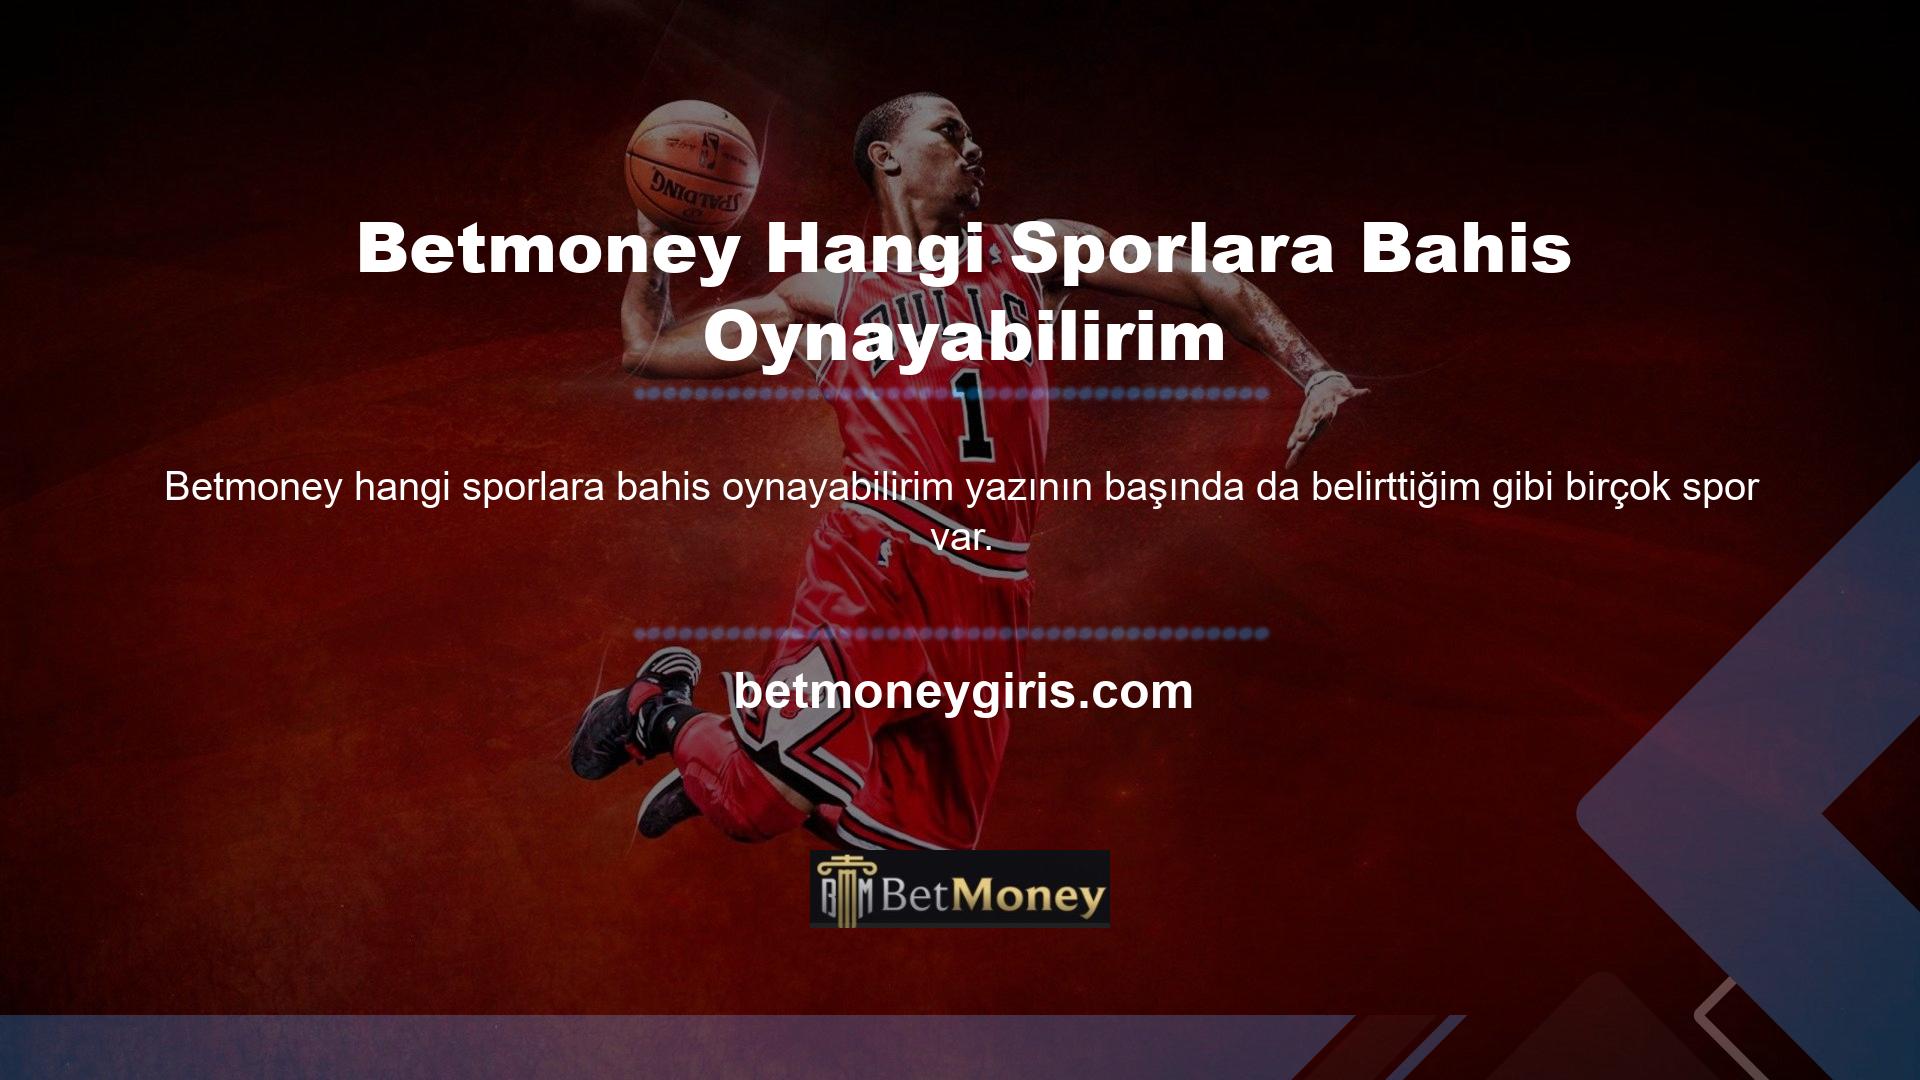 Betmoney web sitesi müşterilerine basketbol, ​​voleybol, hentbol, ​​buz hokeyi, kriket, Amerikan futbolu, salon futbolu, ragbi, motor sporları, beyzbol ve daha onlarca spor branşını sunmaktadır